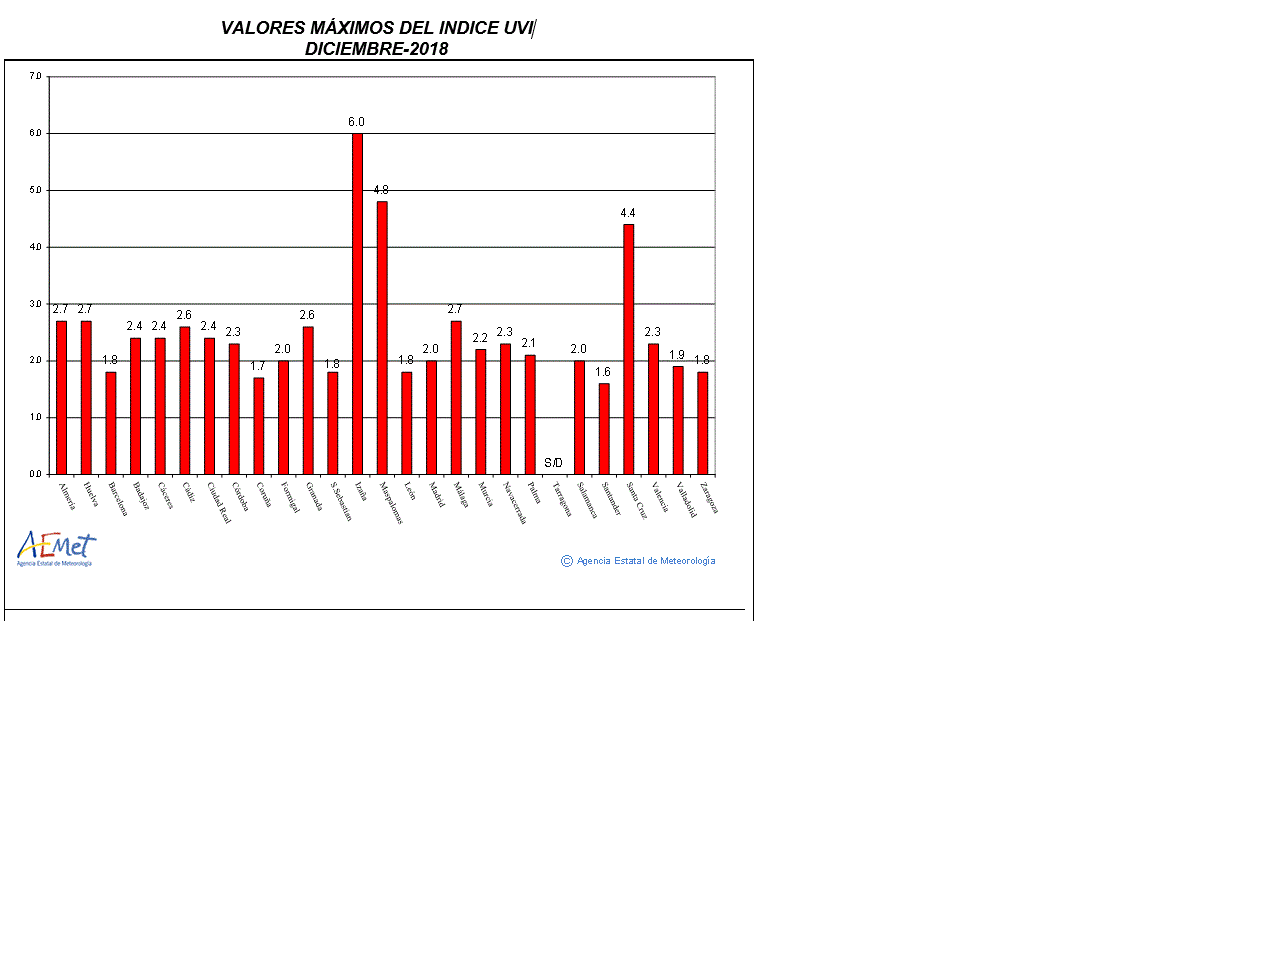 Valores máximos del índice UVB (UVI) de diciembre de 2018